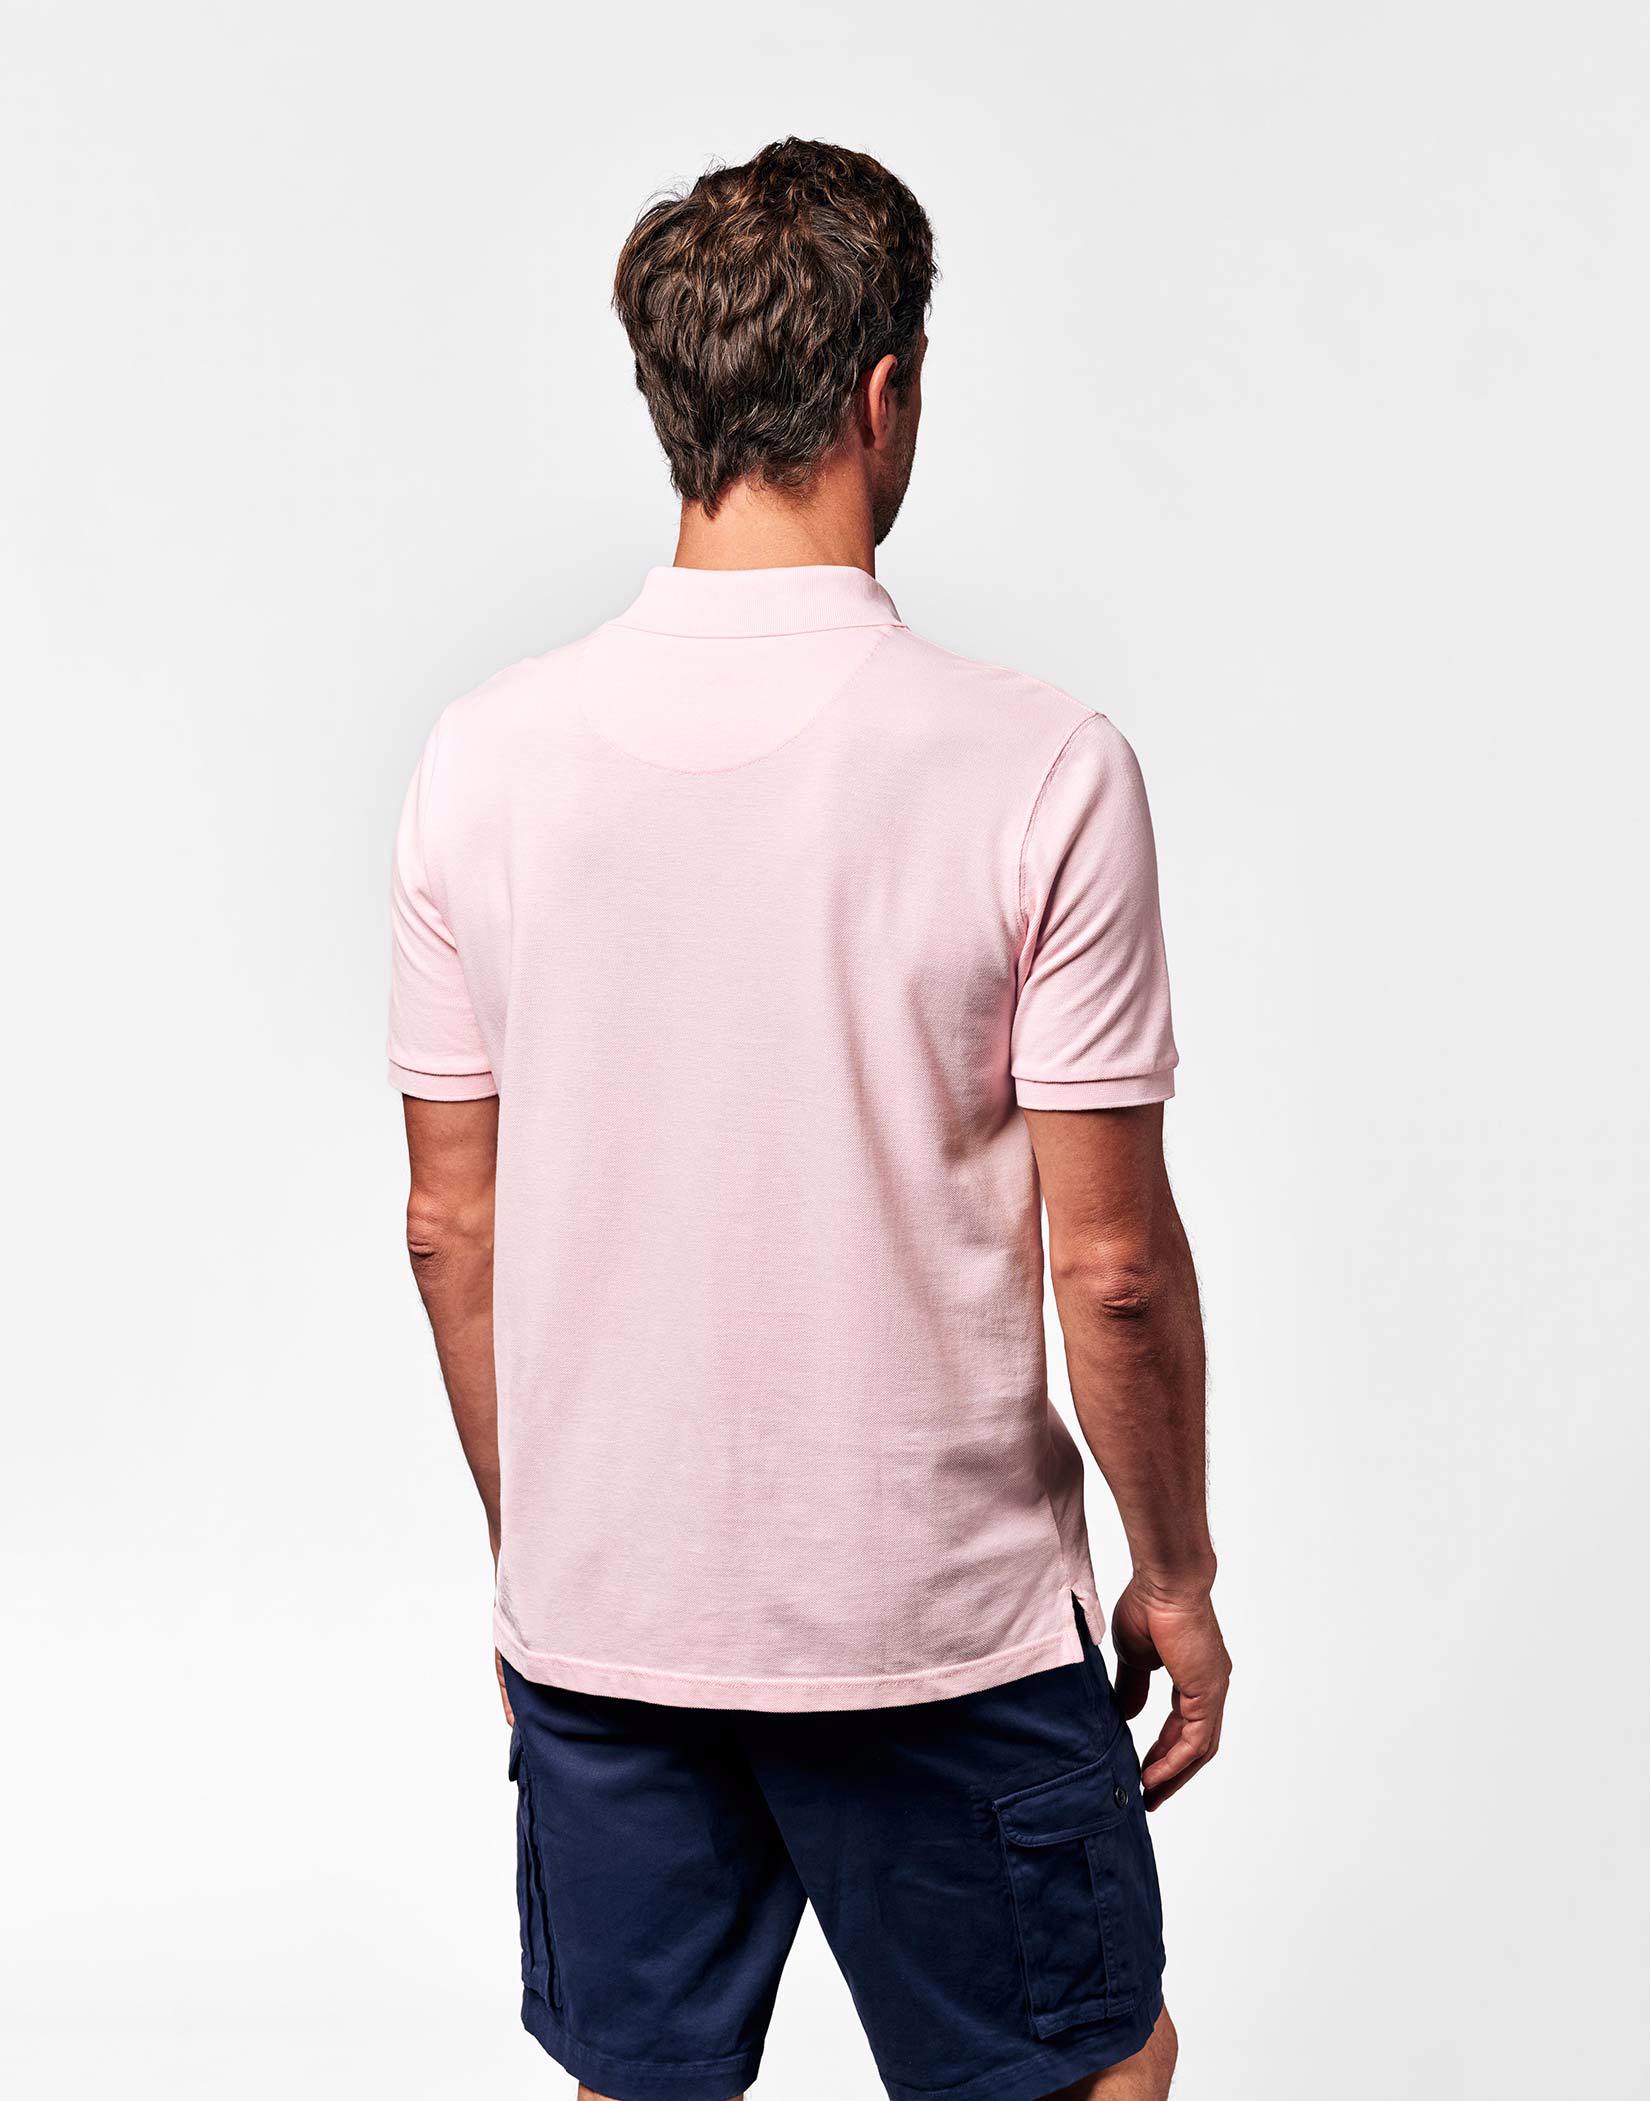 Pique Polo Shirt - Pink